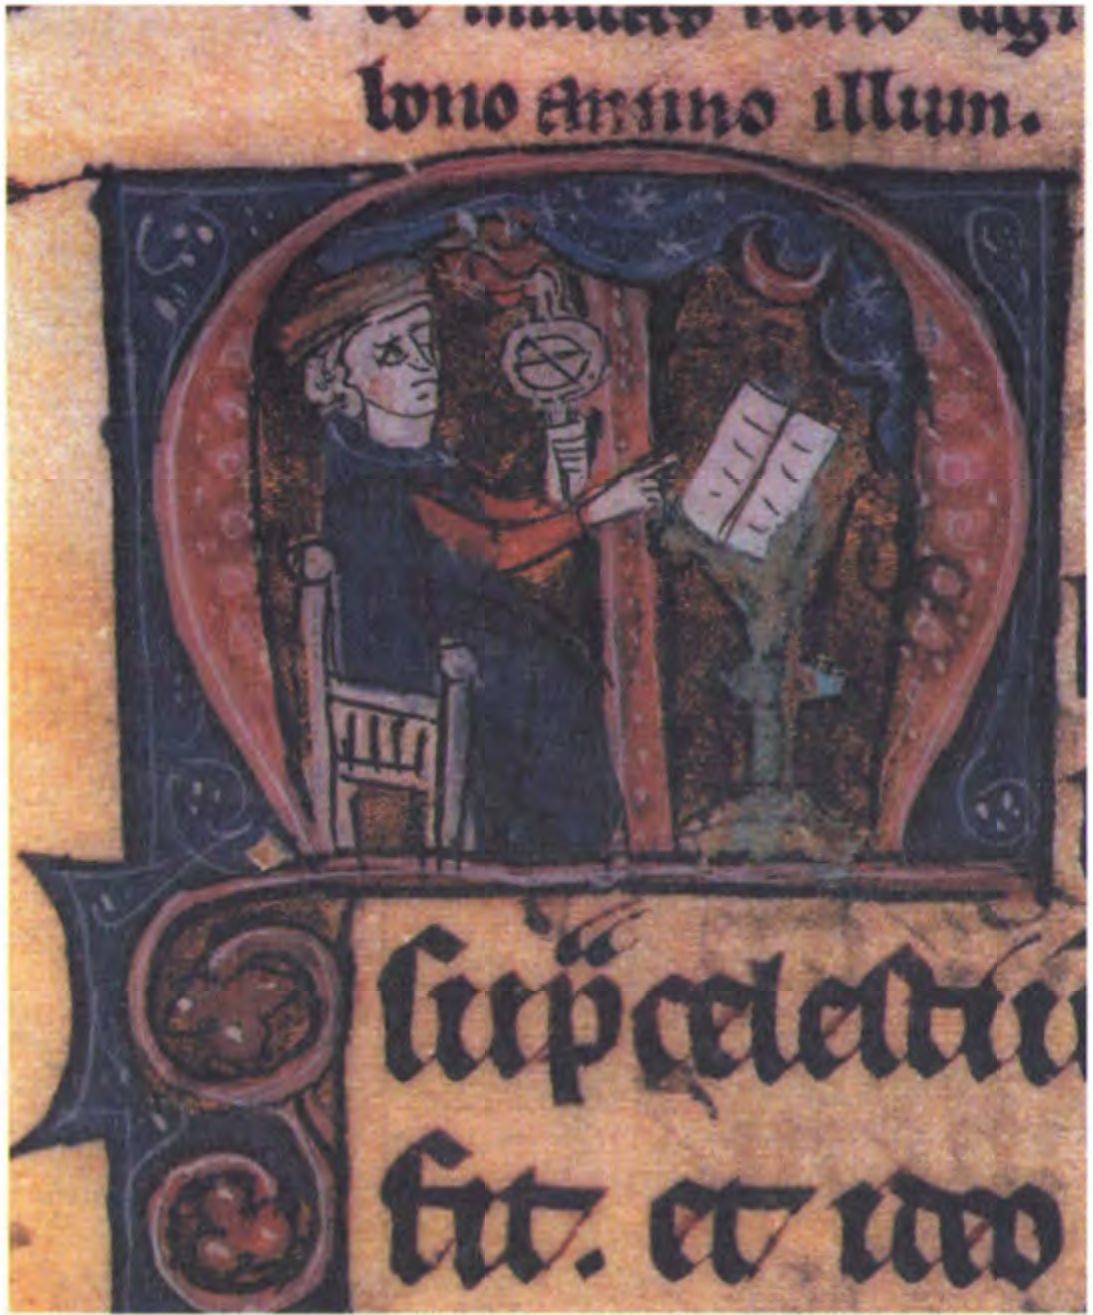 Из средневекового манускрипта Птолемея «Тетрабиблос» — астролог за работой, со своей книгой и инструментами. (Британская Библиотека)